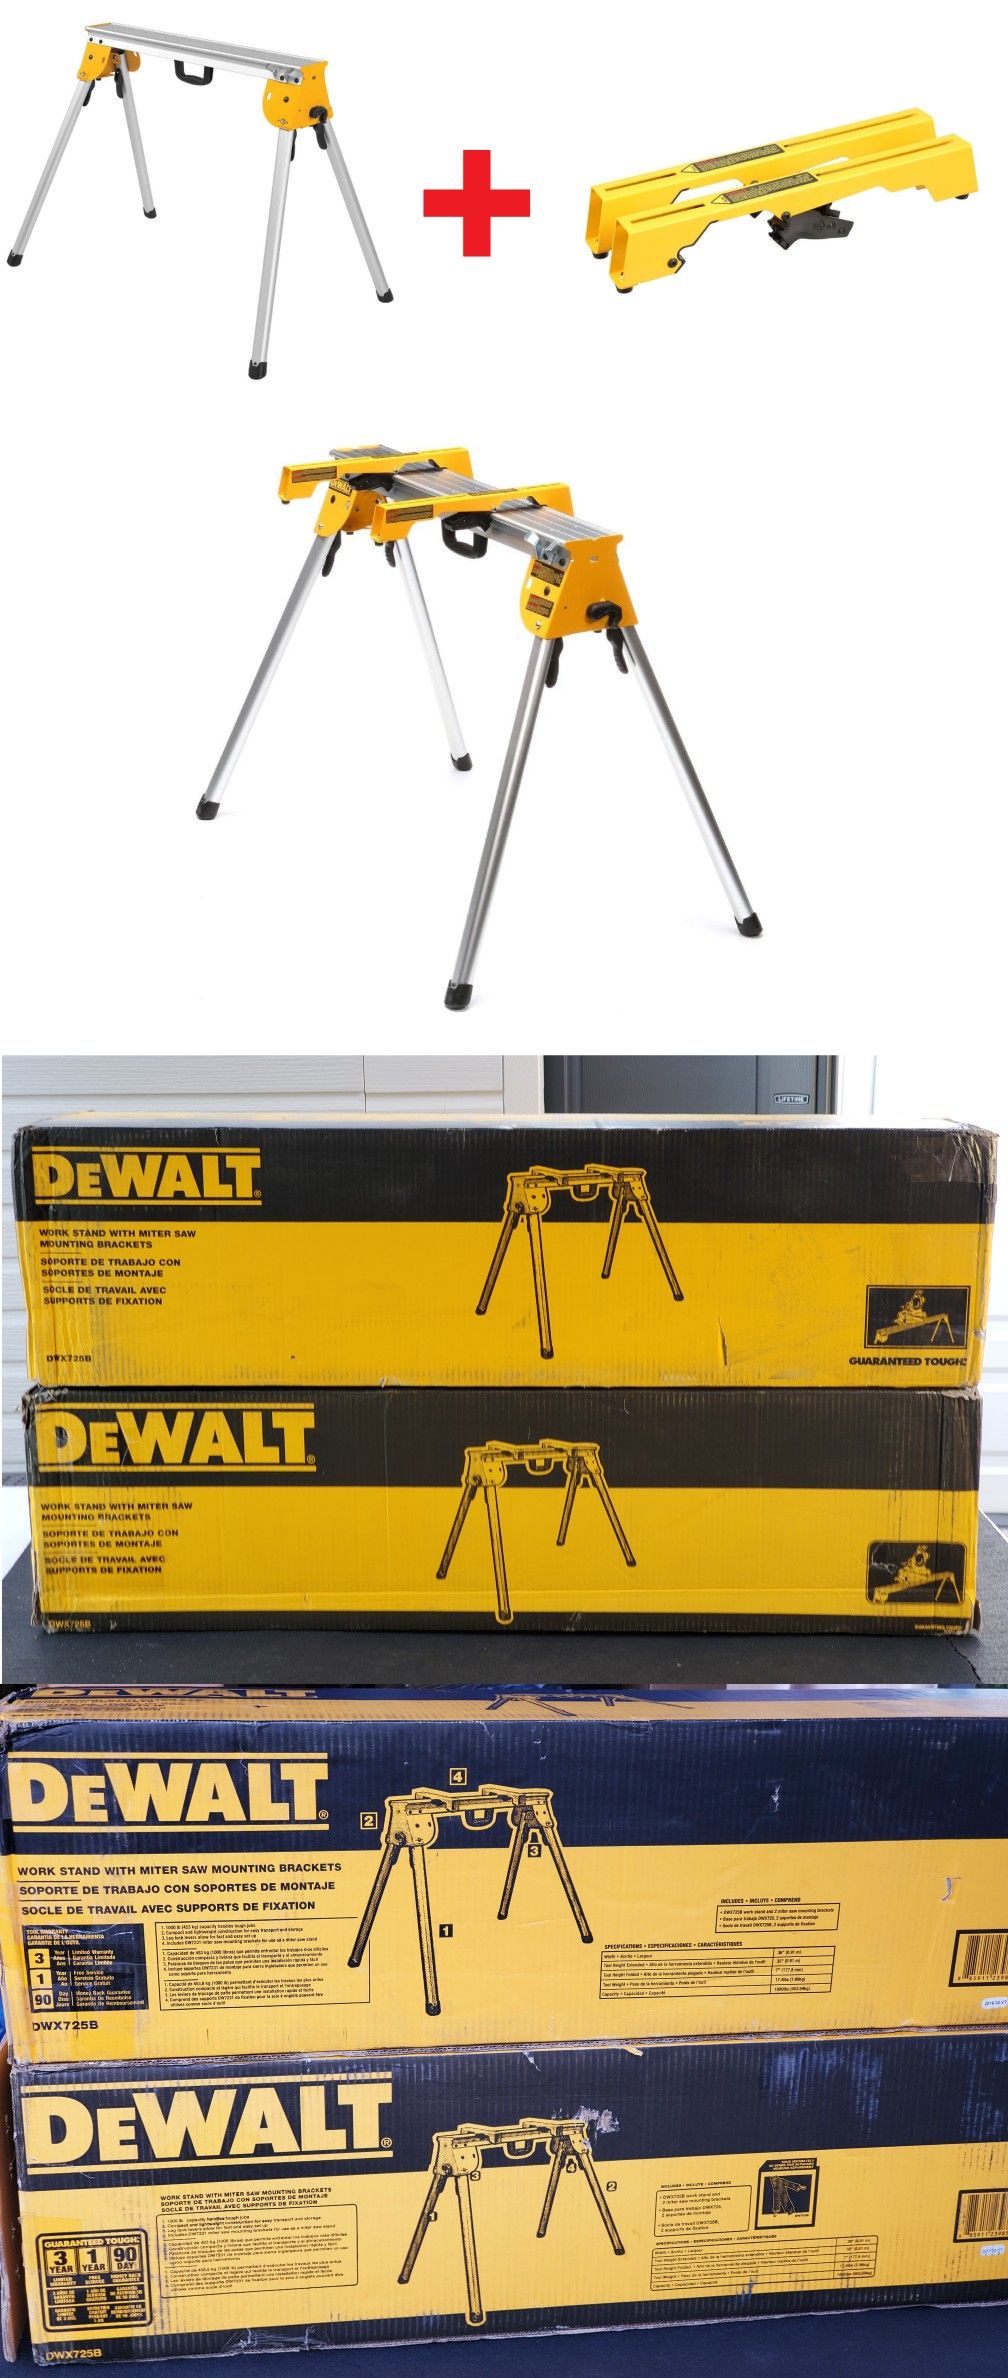 New DEWALT Heavy Duty Work Stand DWX725B with Miter Saw Workstation Tool Mounting Brackets DW7231 DW725 Bracket TableSaw Table Power